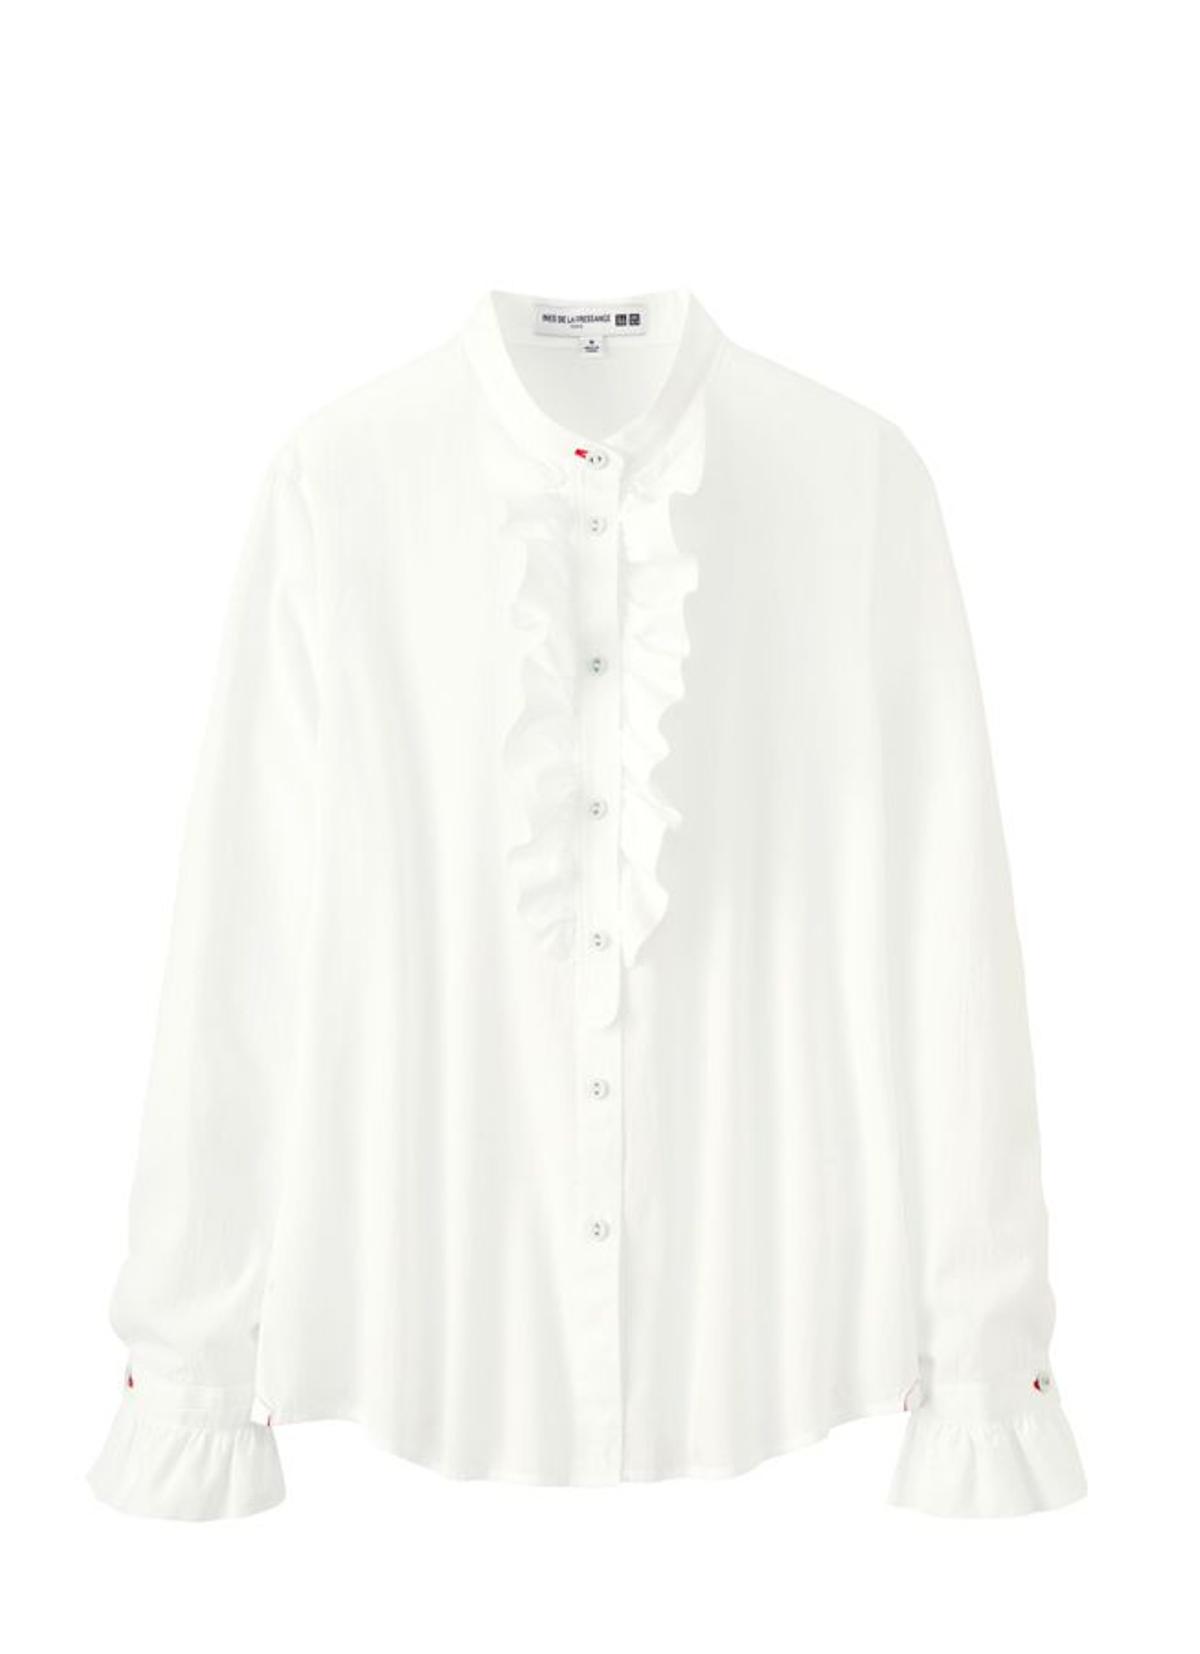 Ines de la Fressange para Uniqlo: camisa blanca con chorreras